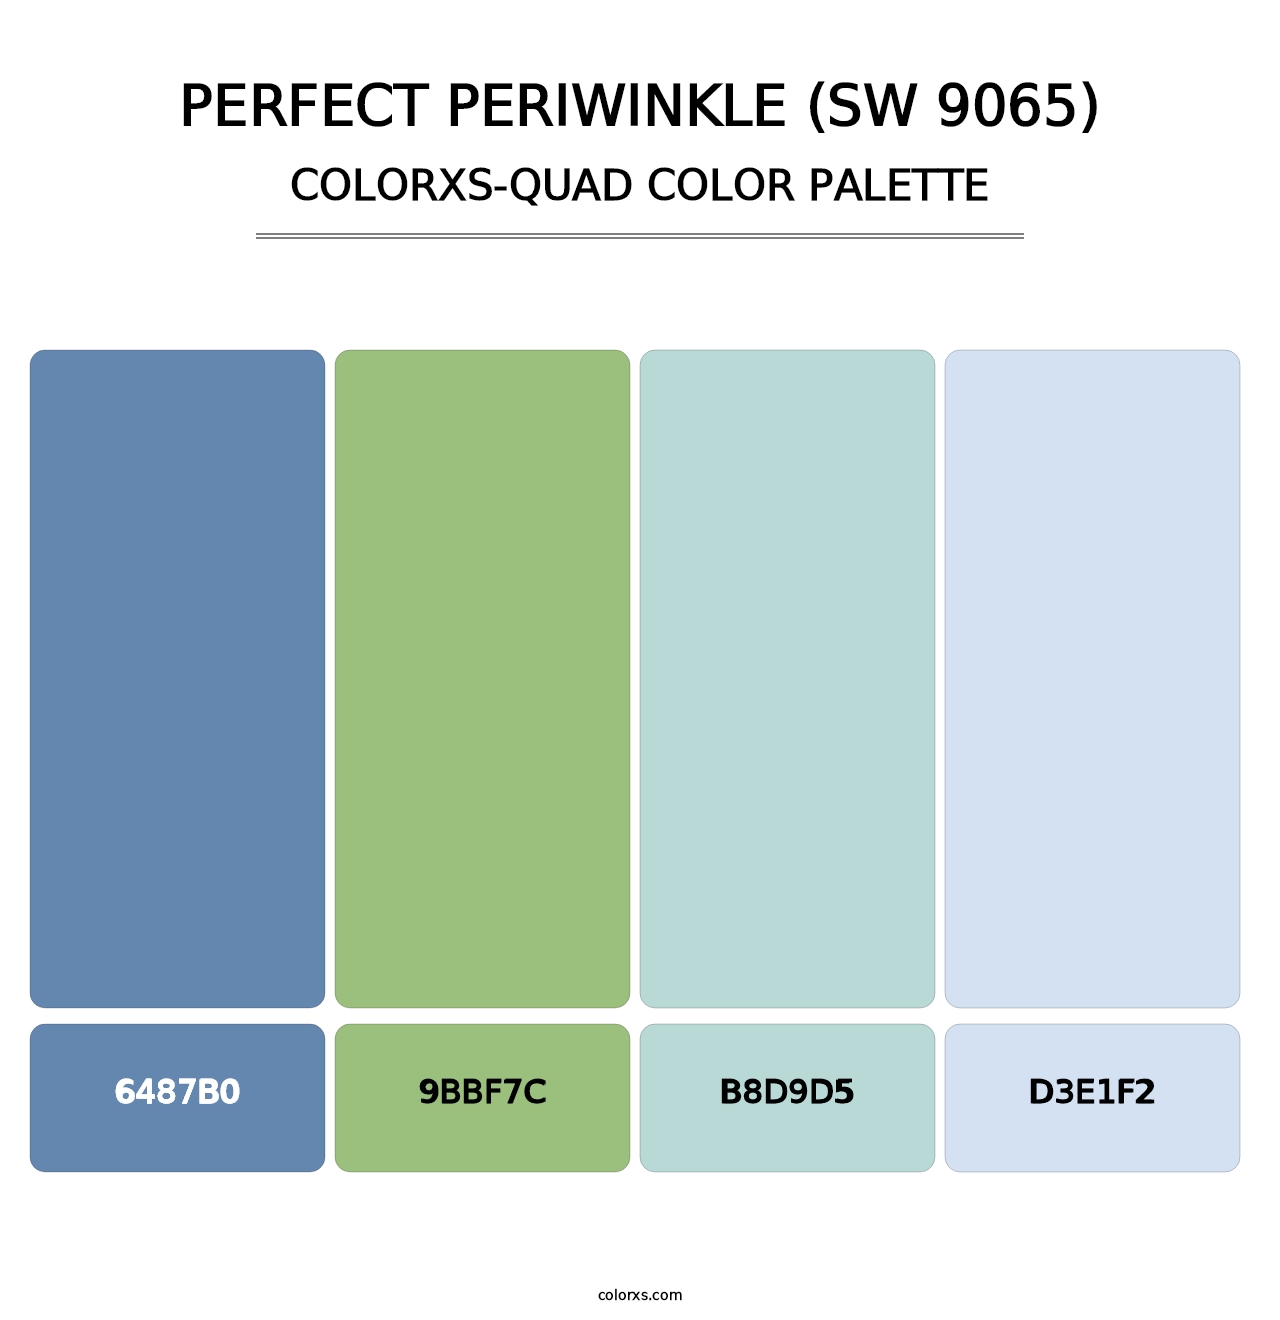 Perfect Periwinkle (SW 9065) - Colorxs Quad Palette